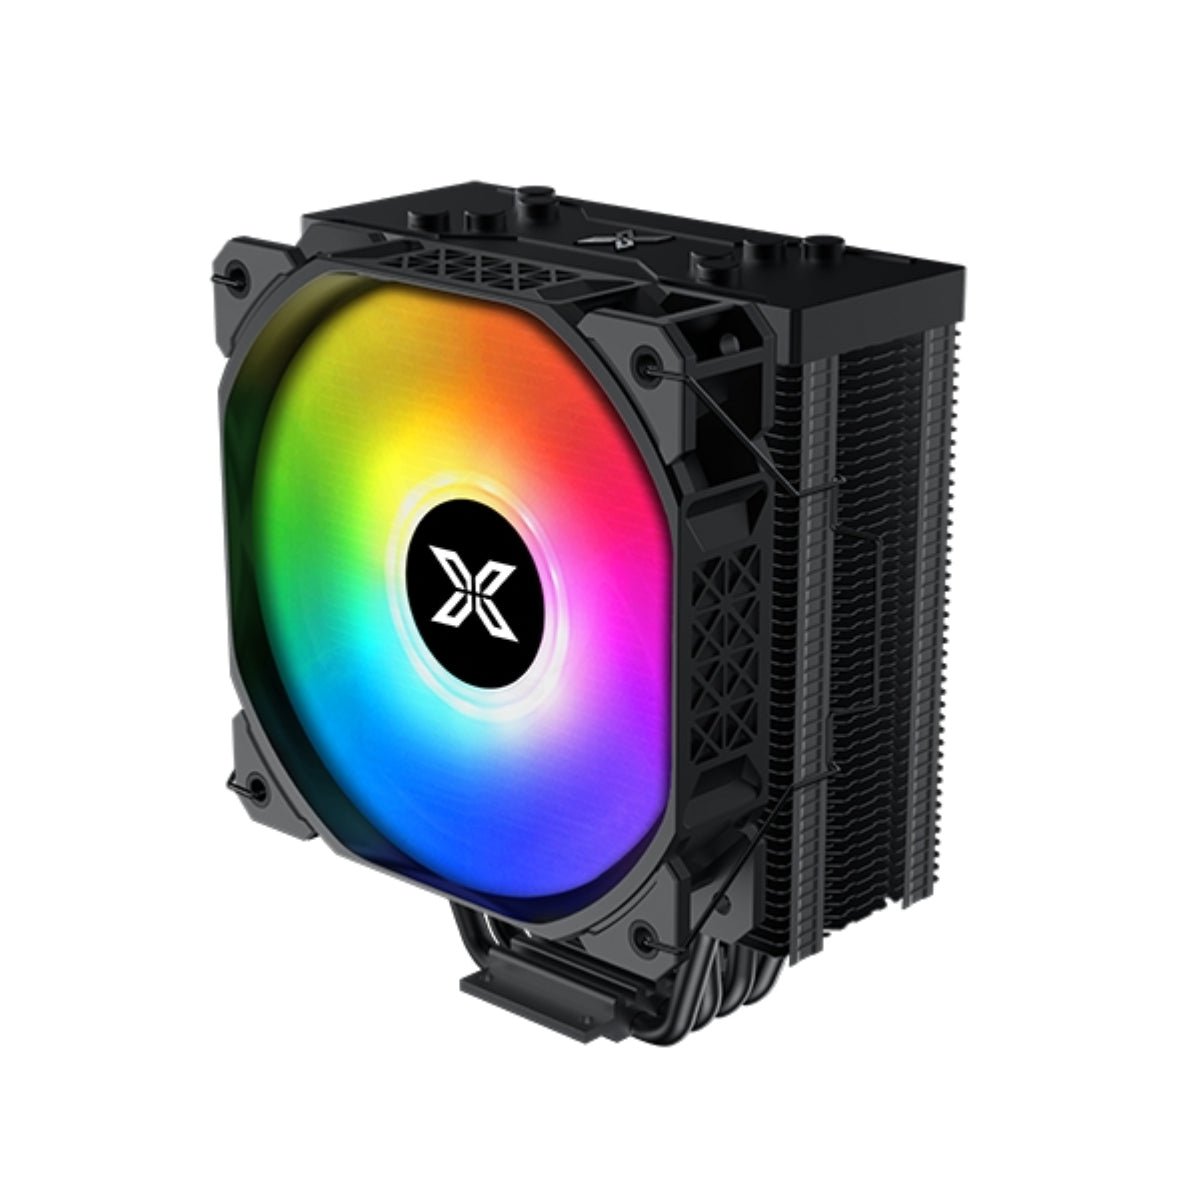 Xigmatek Air-Killer S Air CPU Cooler - Black - Store 974 | ستور ٩٧٤